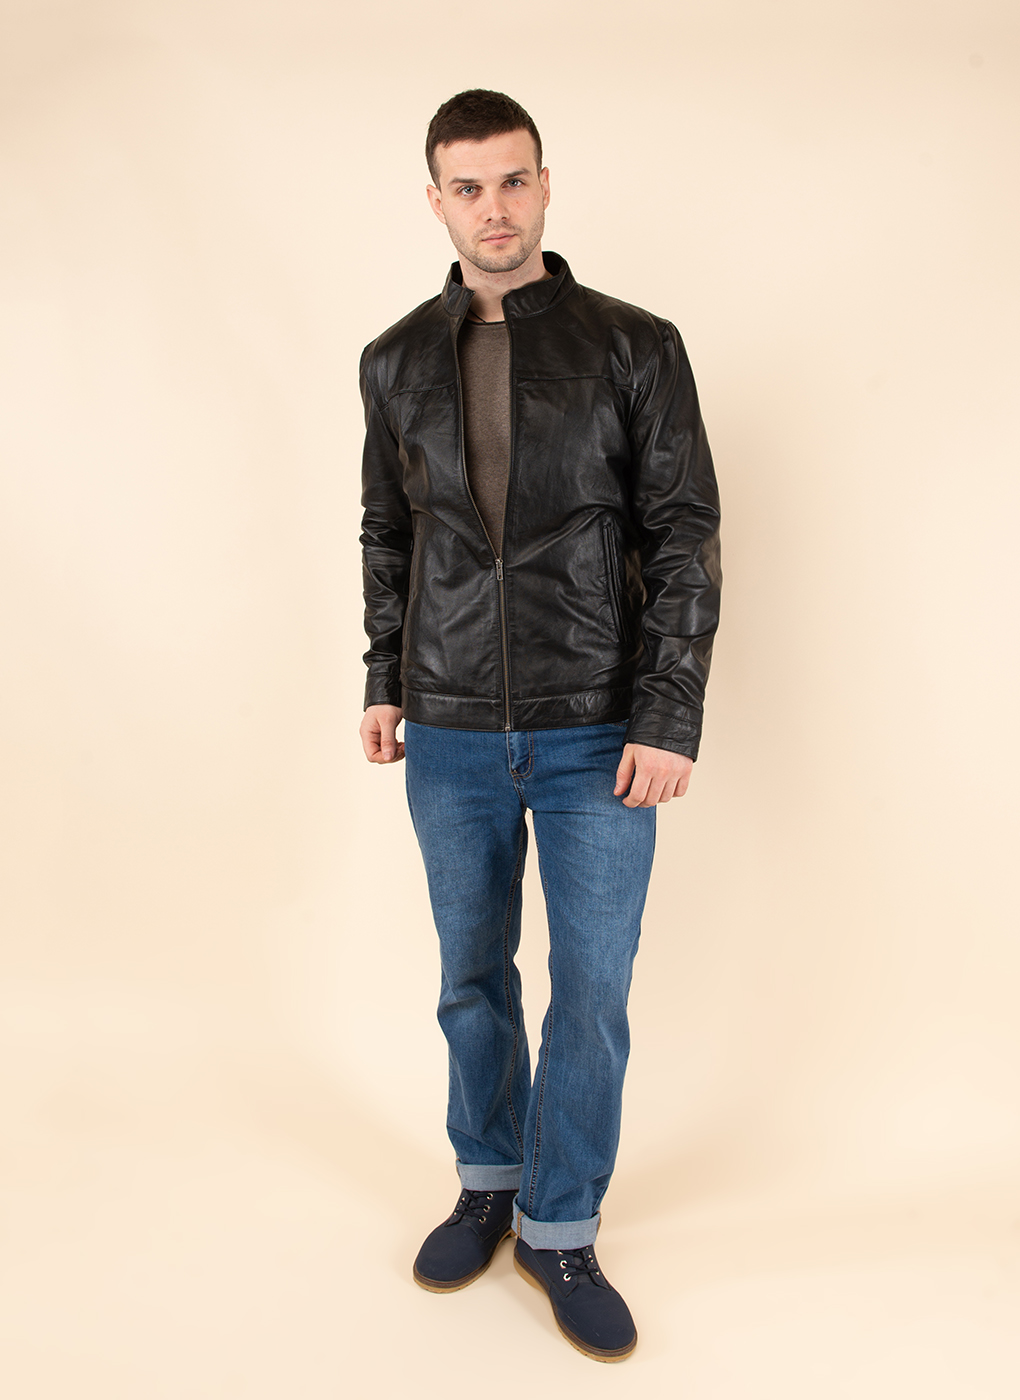 Кожаная куртка мужская Каляев 62649 черная 56 RU